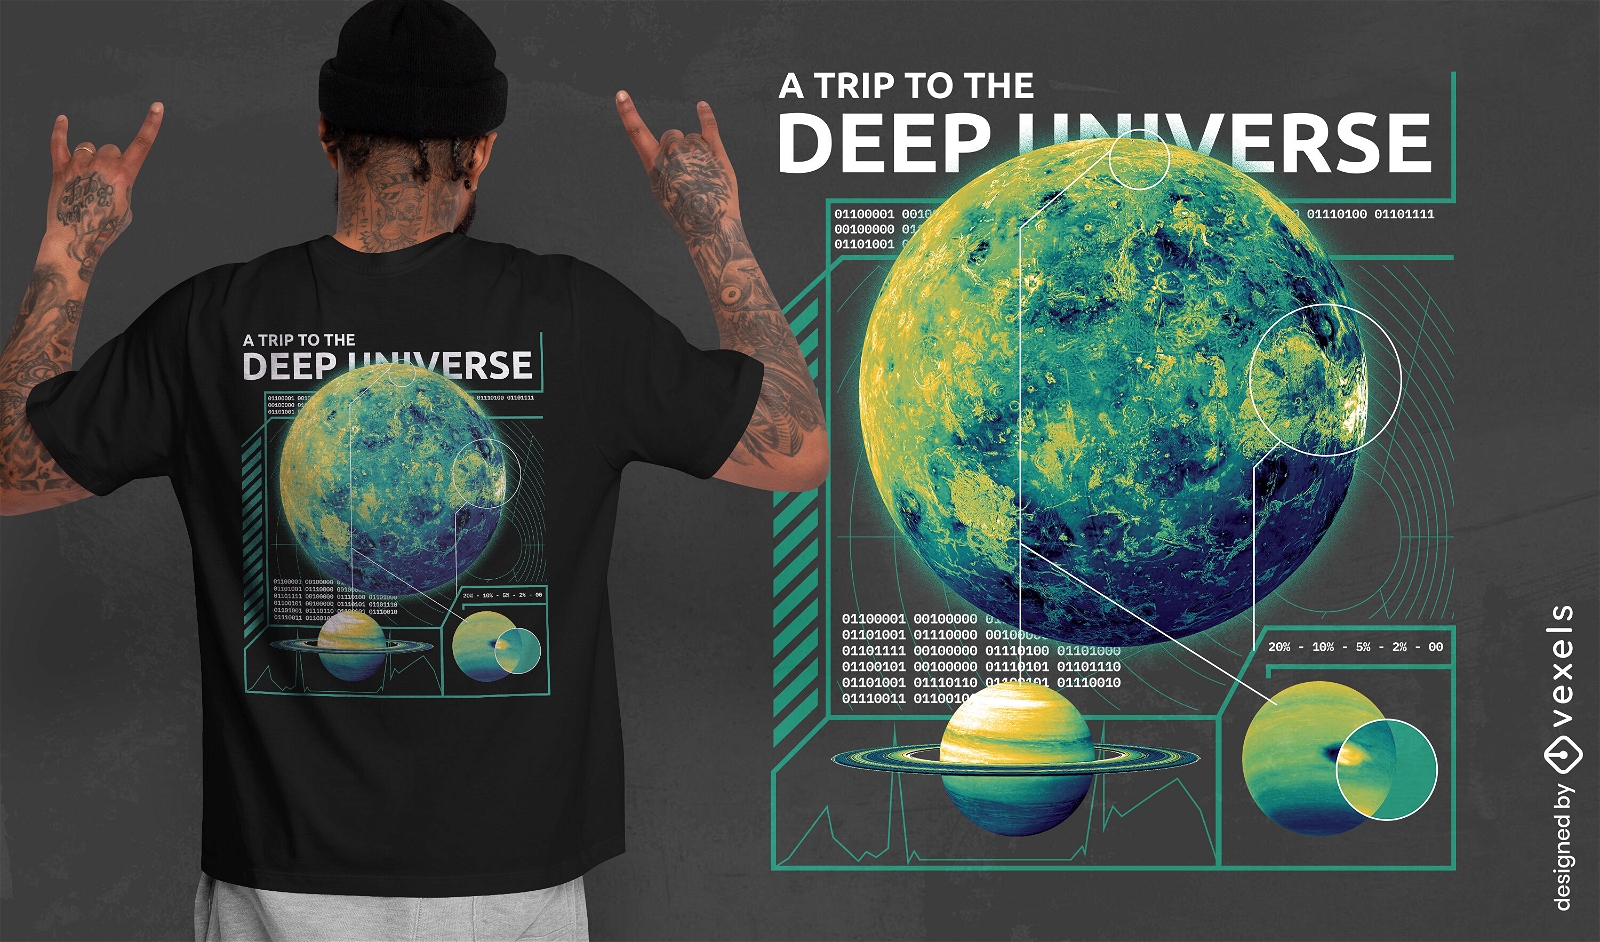 Dise?o de camiseta psd de planetas del universo profundo